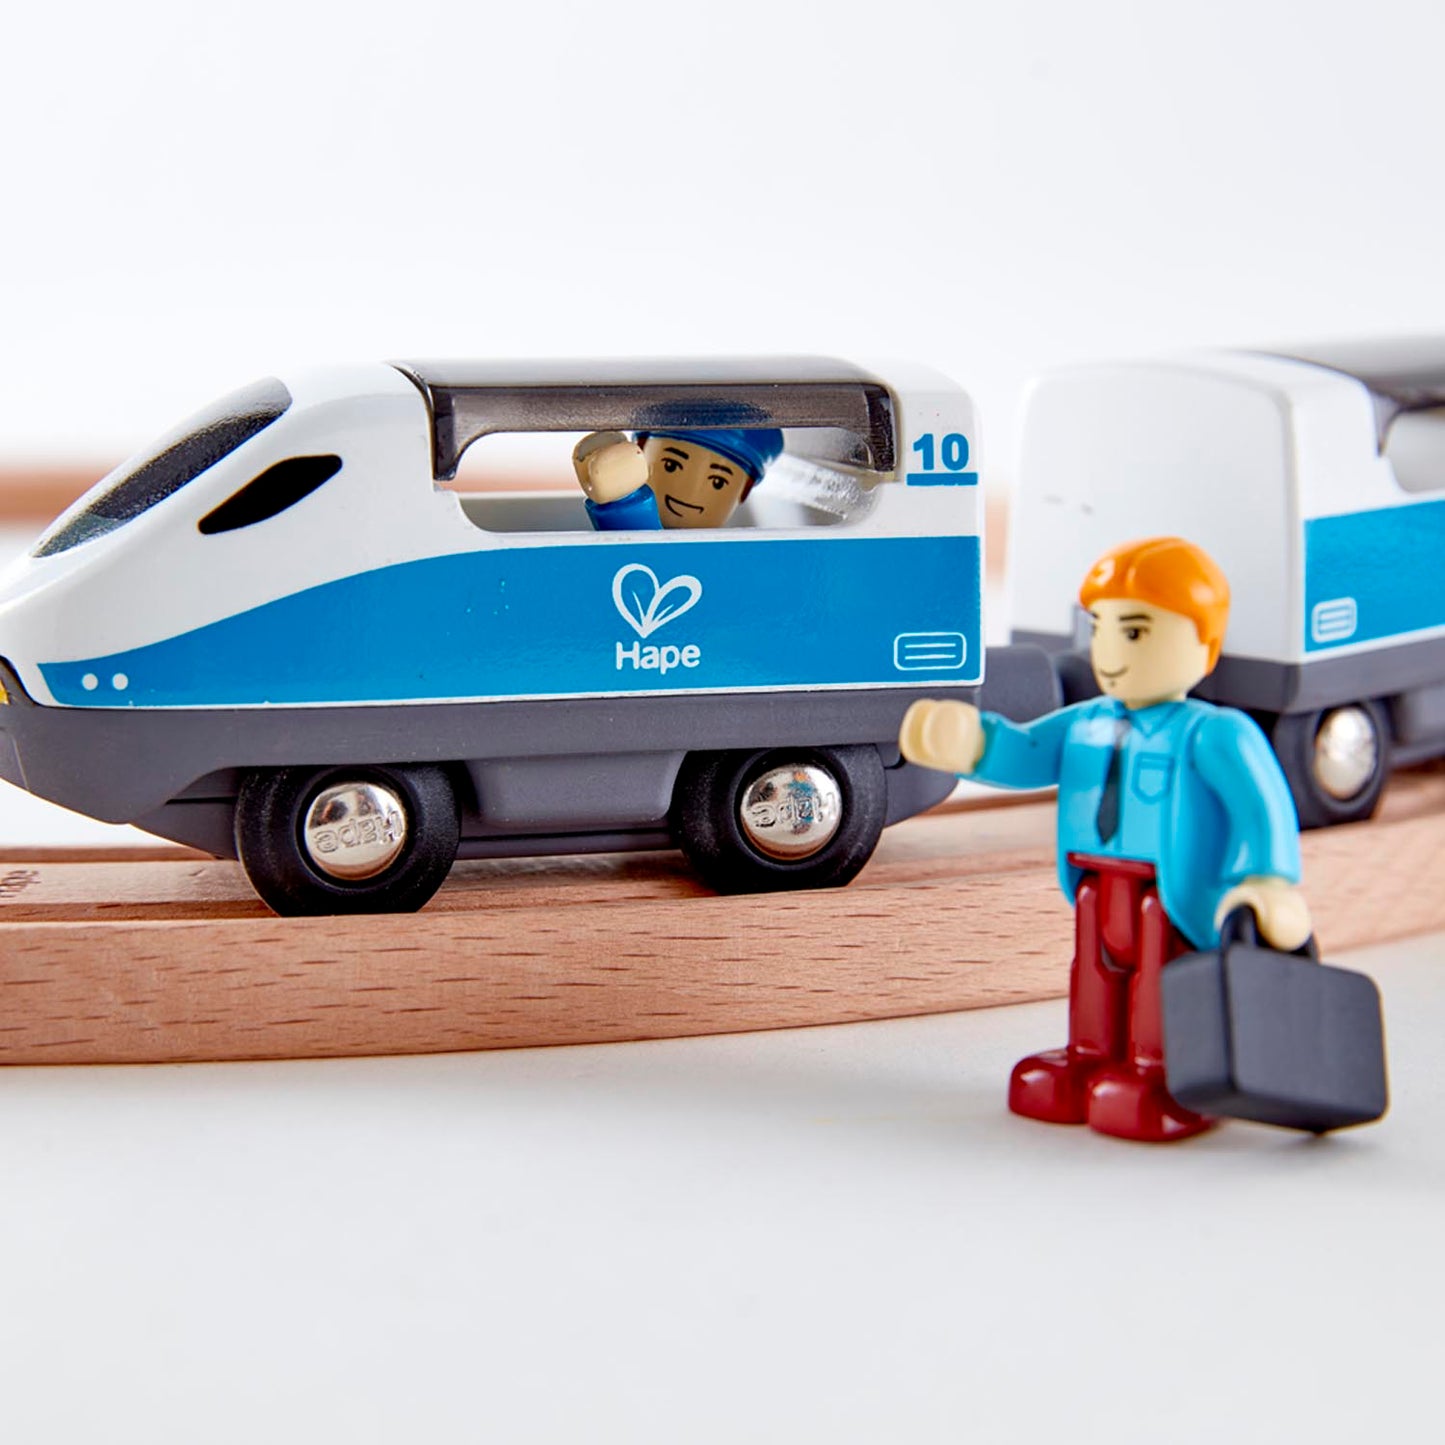 Hape Figure 8 Rail Kit - Educational Railway Adventure for Kids, Ages 3+